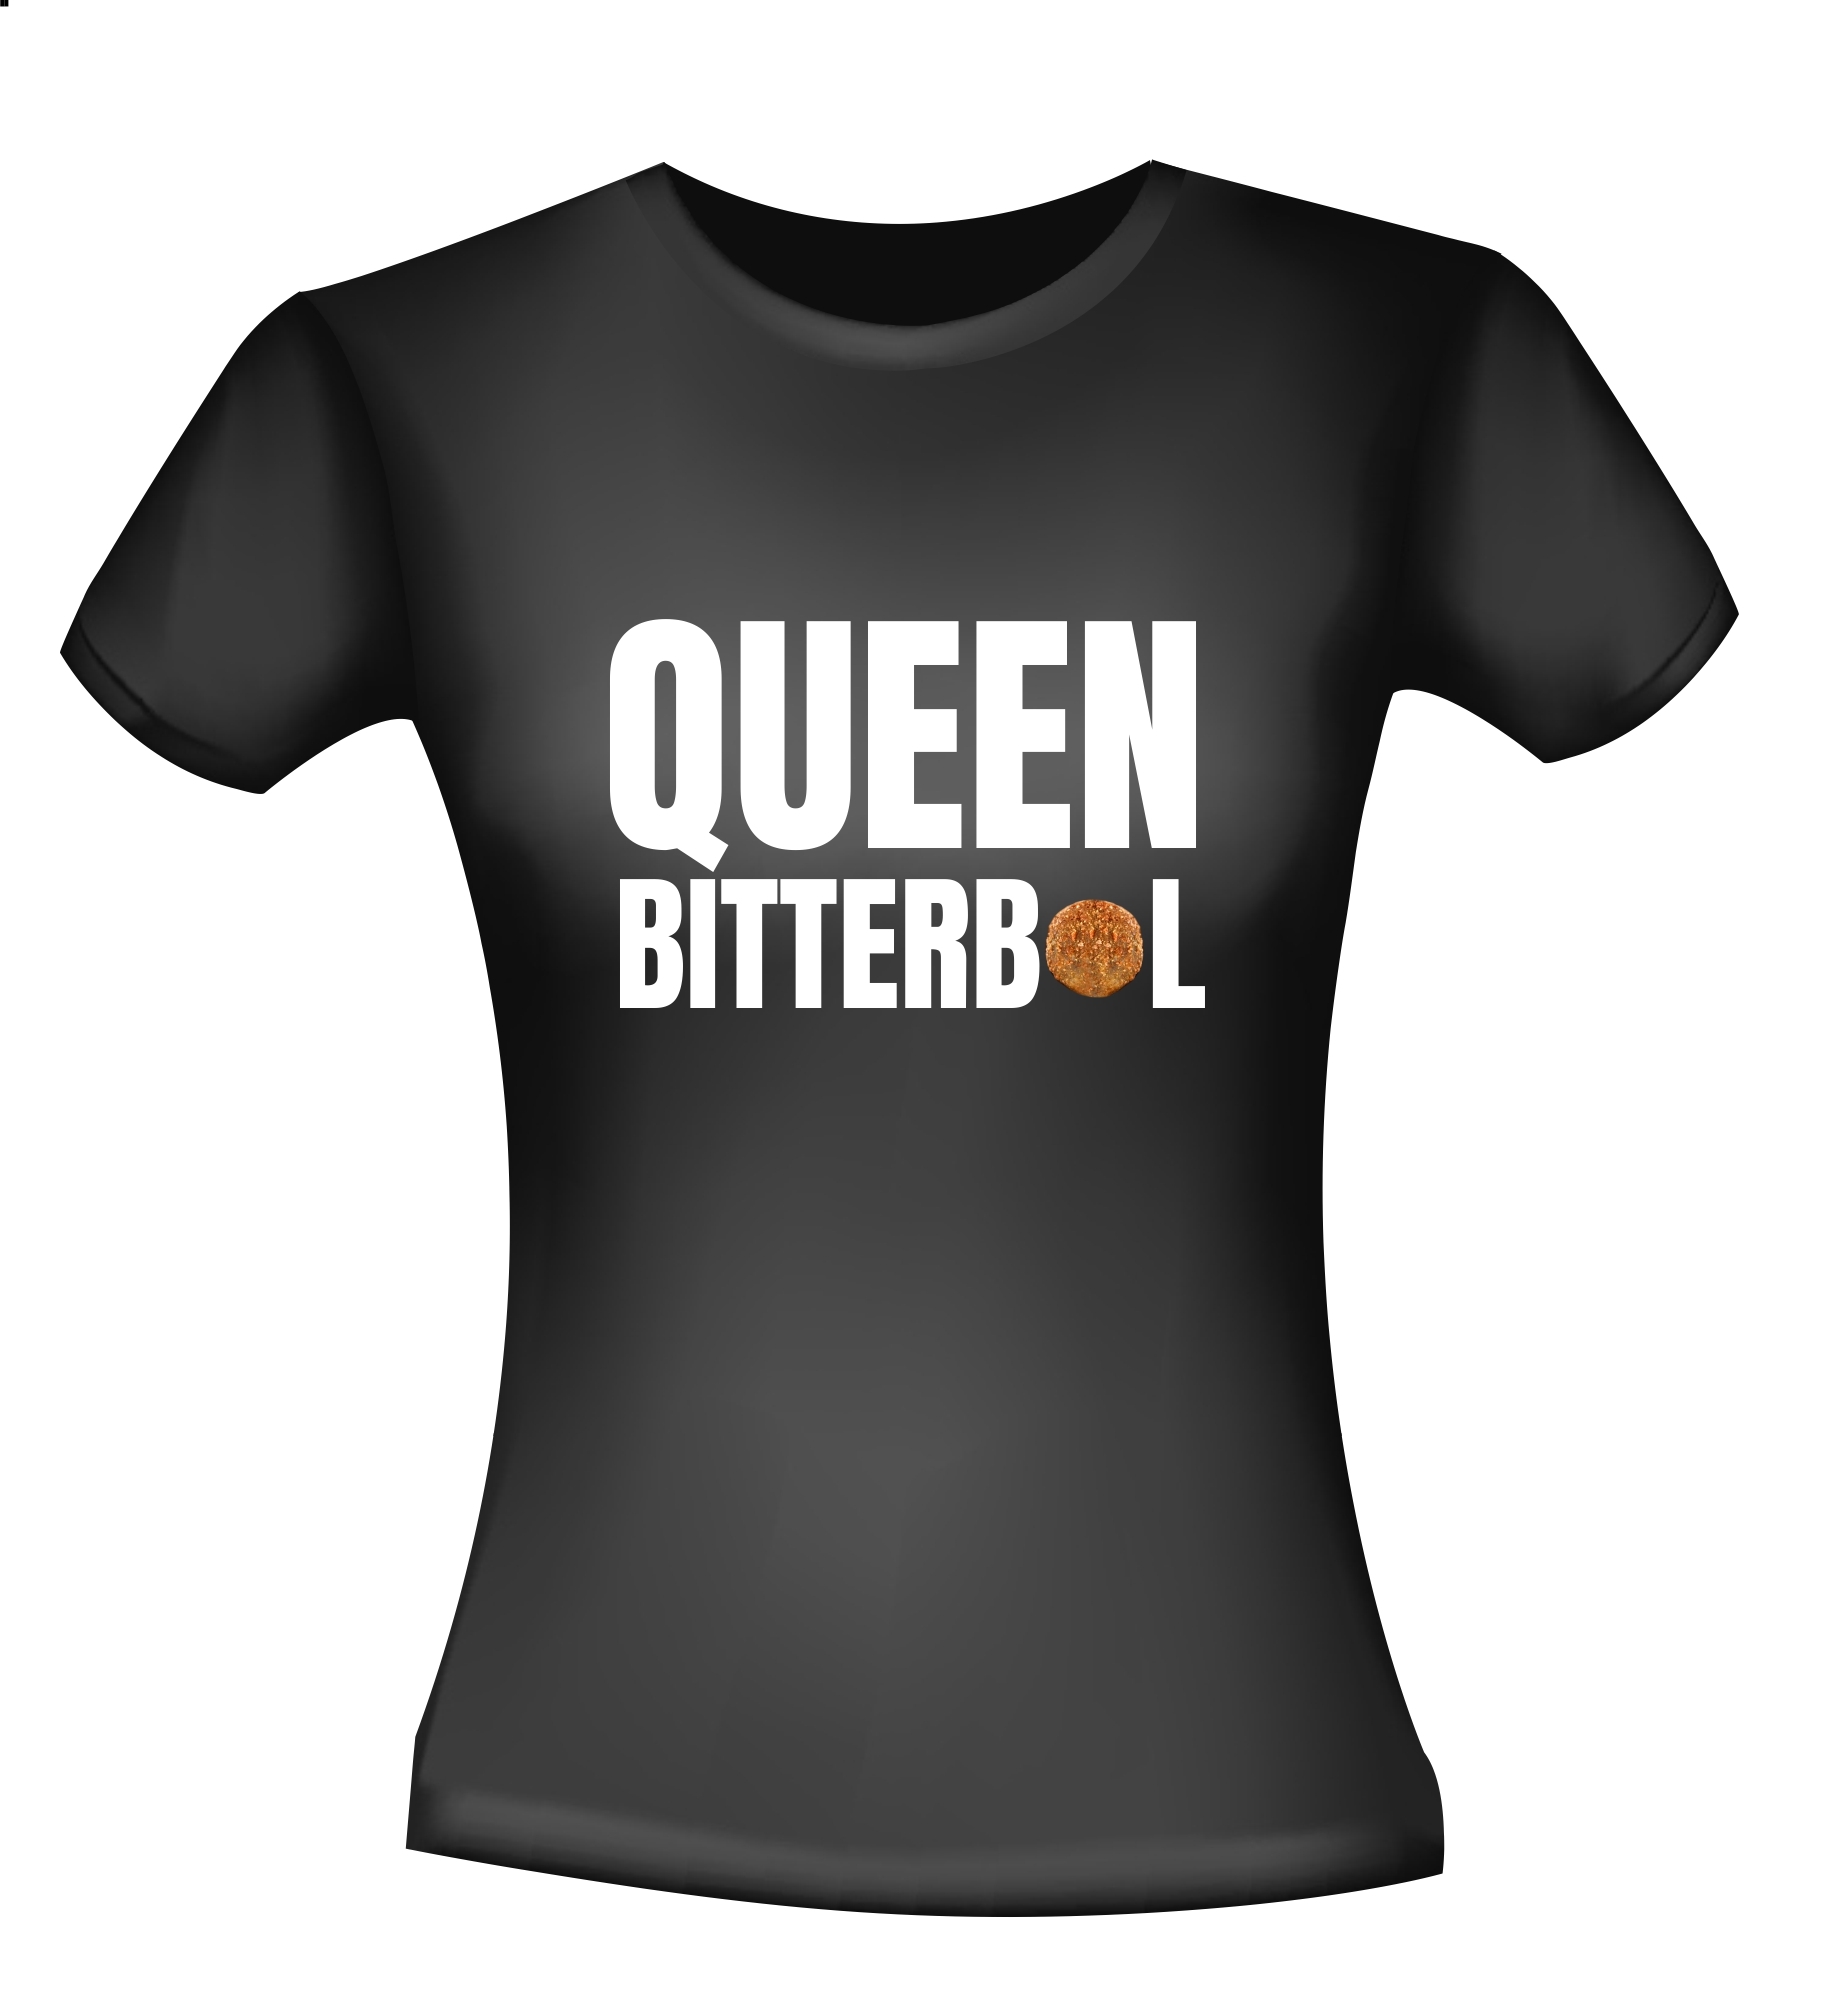 Shirtje voor Queen bitterbal